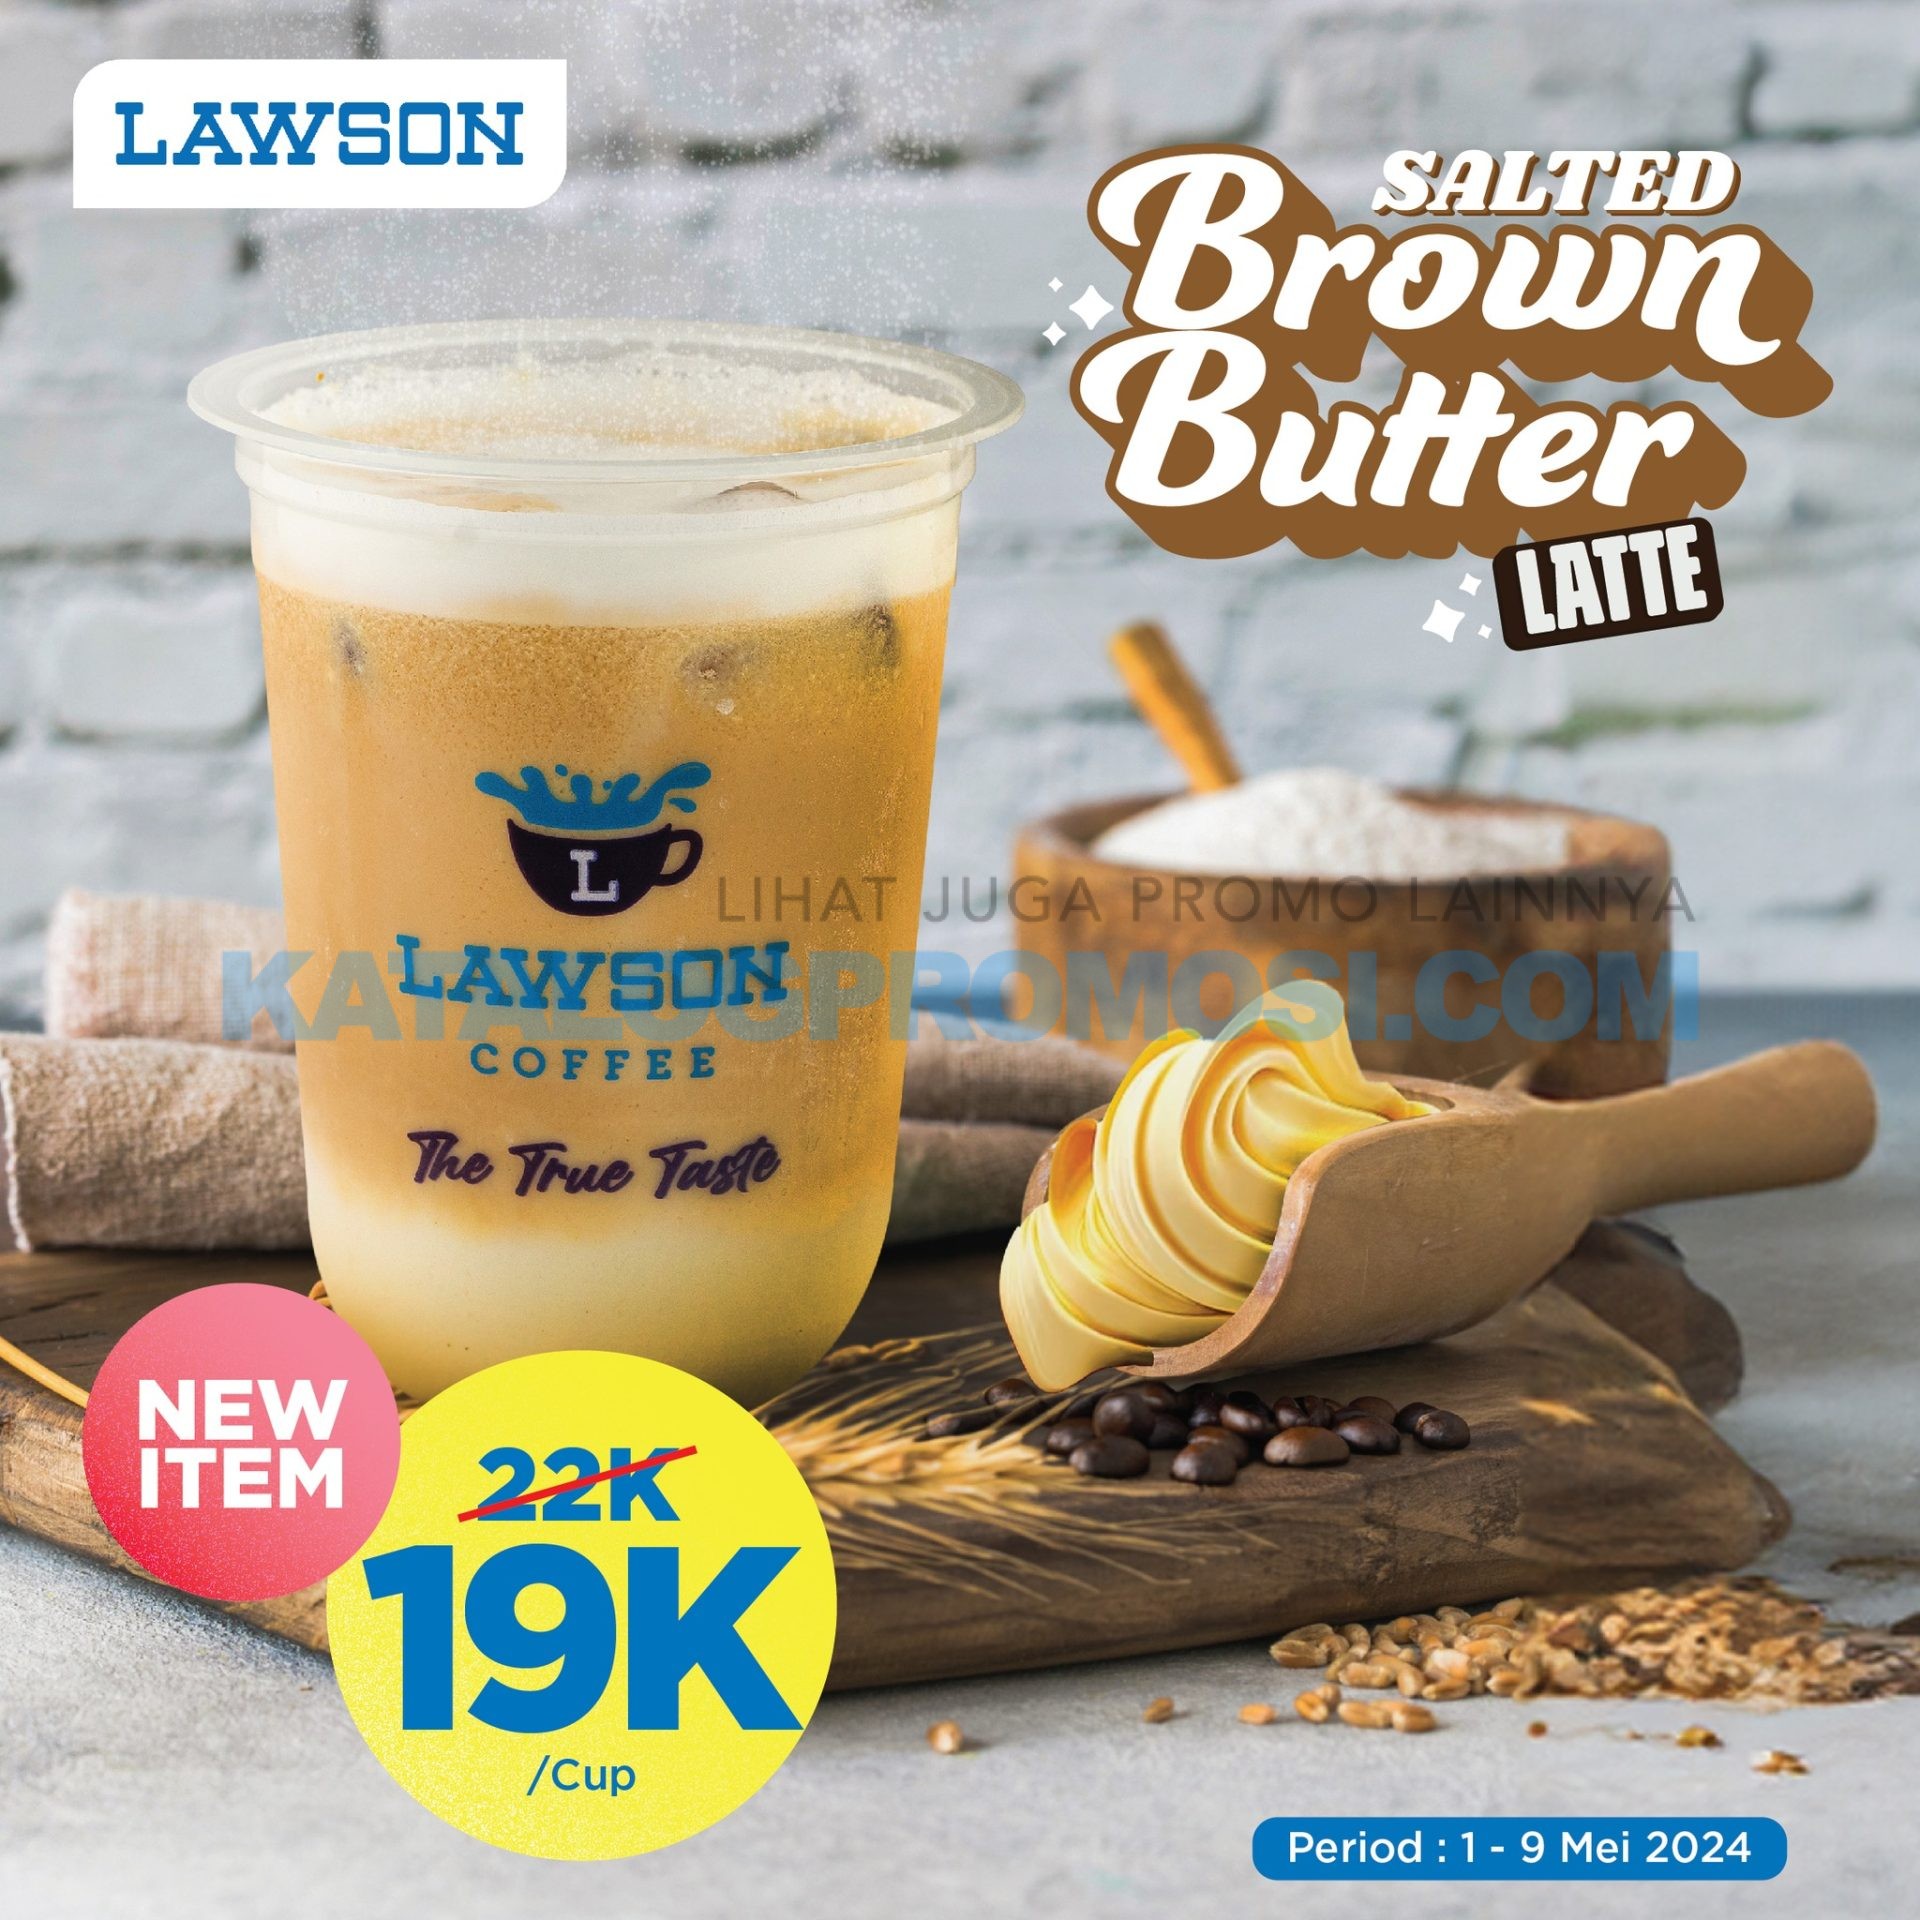 BARU! Salted Brown Butter Latte dari LAWSON